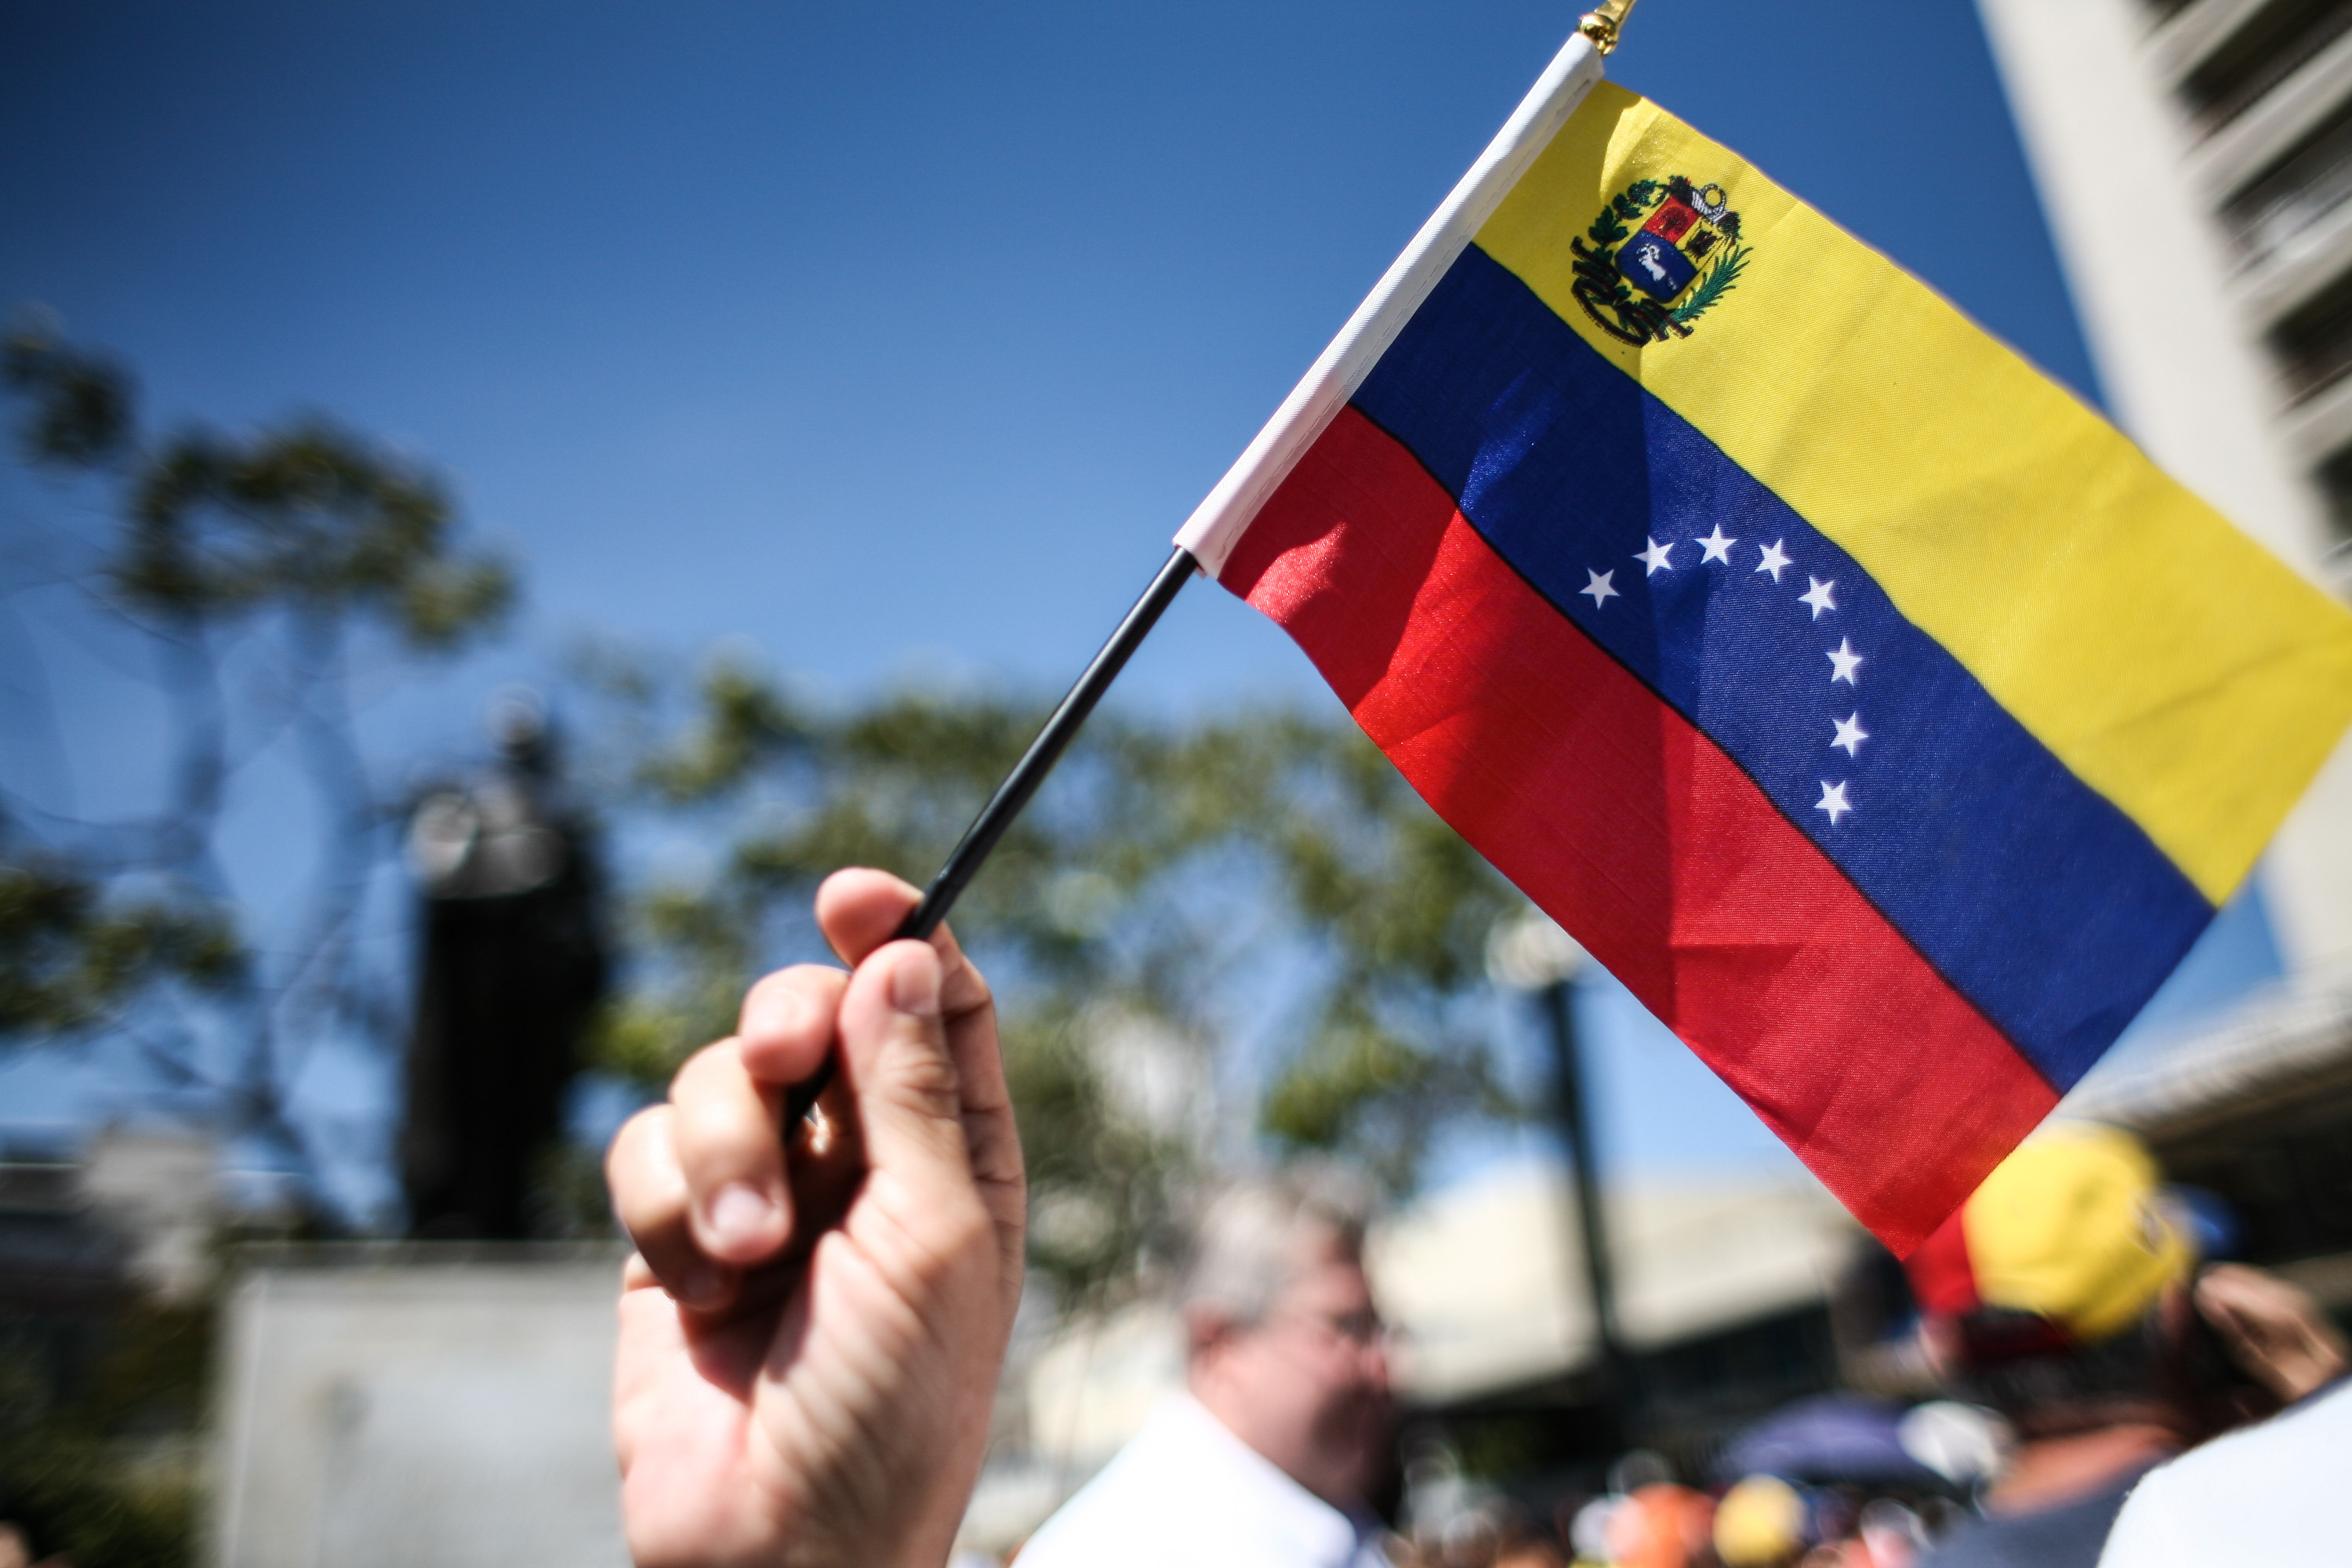 (160123) -- CARACAS, enero 23, 2016 (Xinhua) -- Una persona ondea una bandera durante una manifestación de simpatizantes y miembros de la Mesa de la Unidad Democráctica (MUD), con motivo de la conmemoración de la caída de la dictadura de Marcos Pérez Jiménez, en la Plaza Brion de Chacaíto, en Caracas, Venezuela, el 23 de enero de 2016. De acuerdo con información de la prensa local, integrantes de la MUD convocaron el sábado a una concentración para conmemorar la rebelión cívico-militar que derrocó al presidente de facto Marcos Pérez Jiménez el 23 de enero de 1958. (Xinhua/Boris Vergara) (bv) (jp) (fnc)